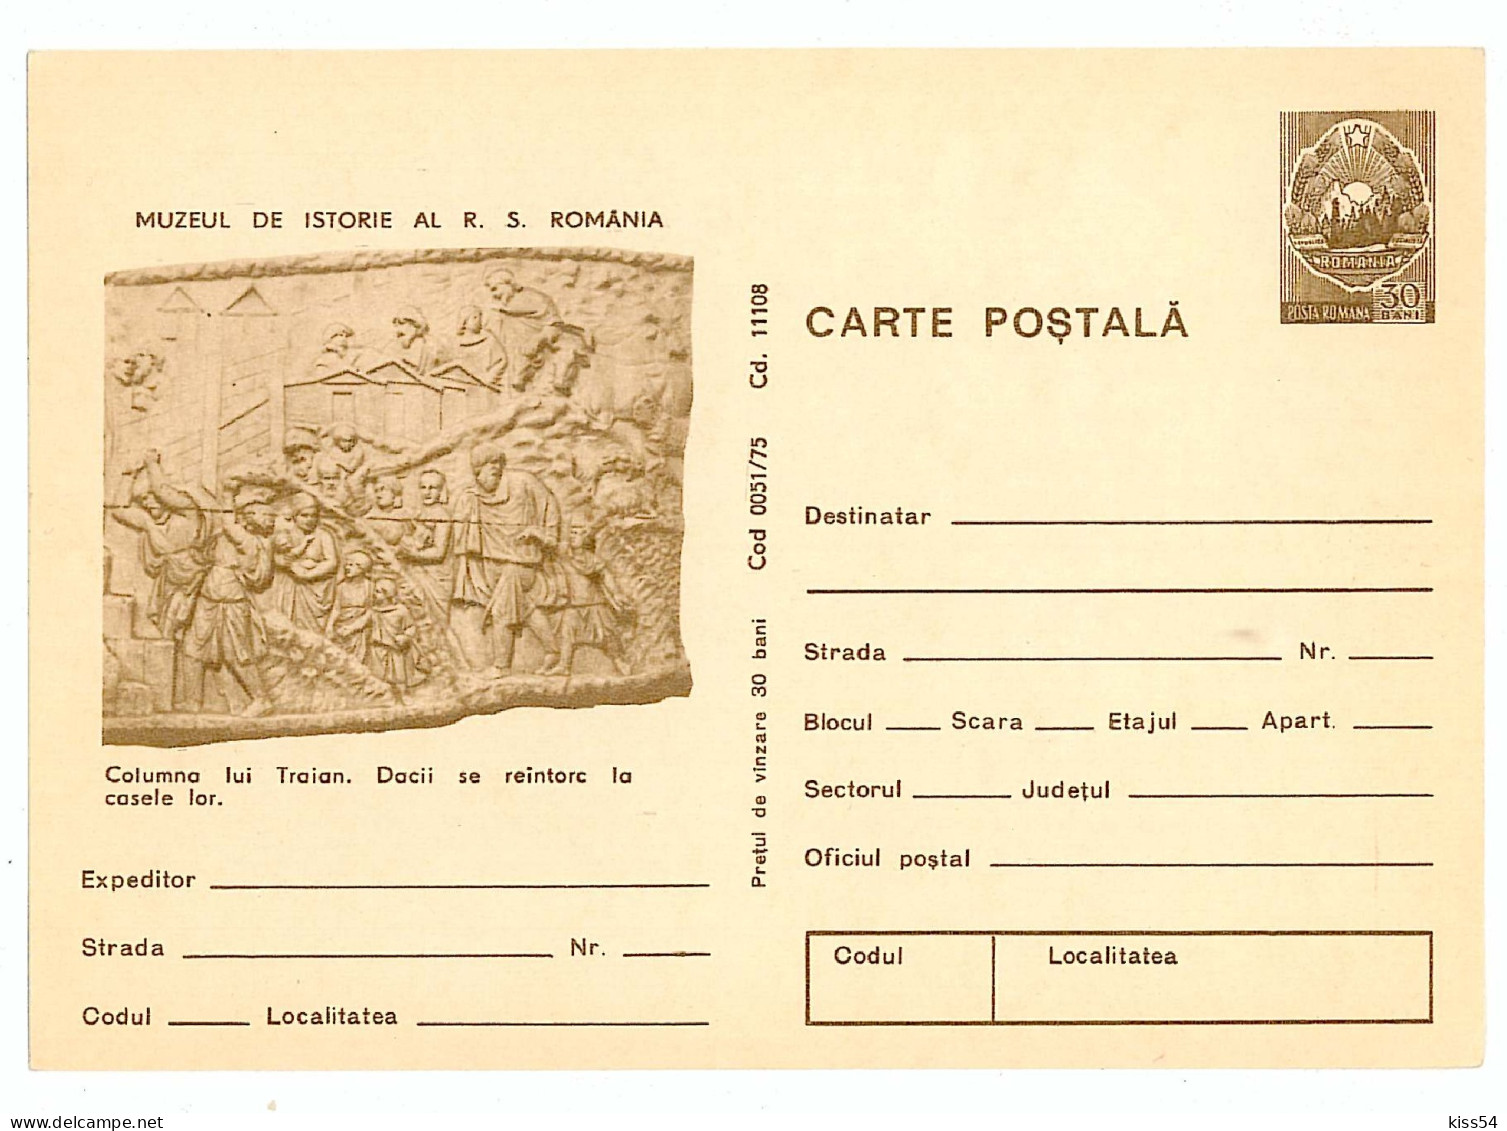 IP 75 - 51 ROME, Trajan's Column, Romania - Stationery - Unused - 1975 - Postal Stationery